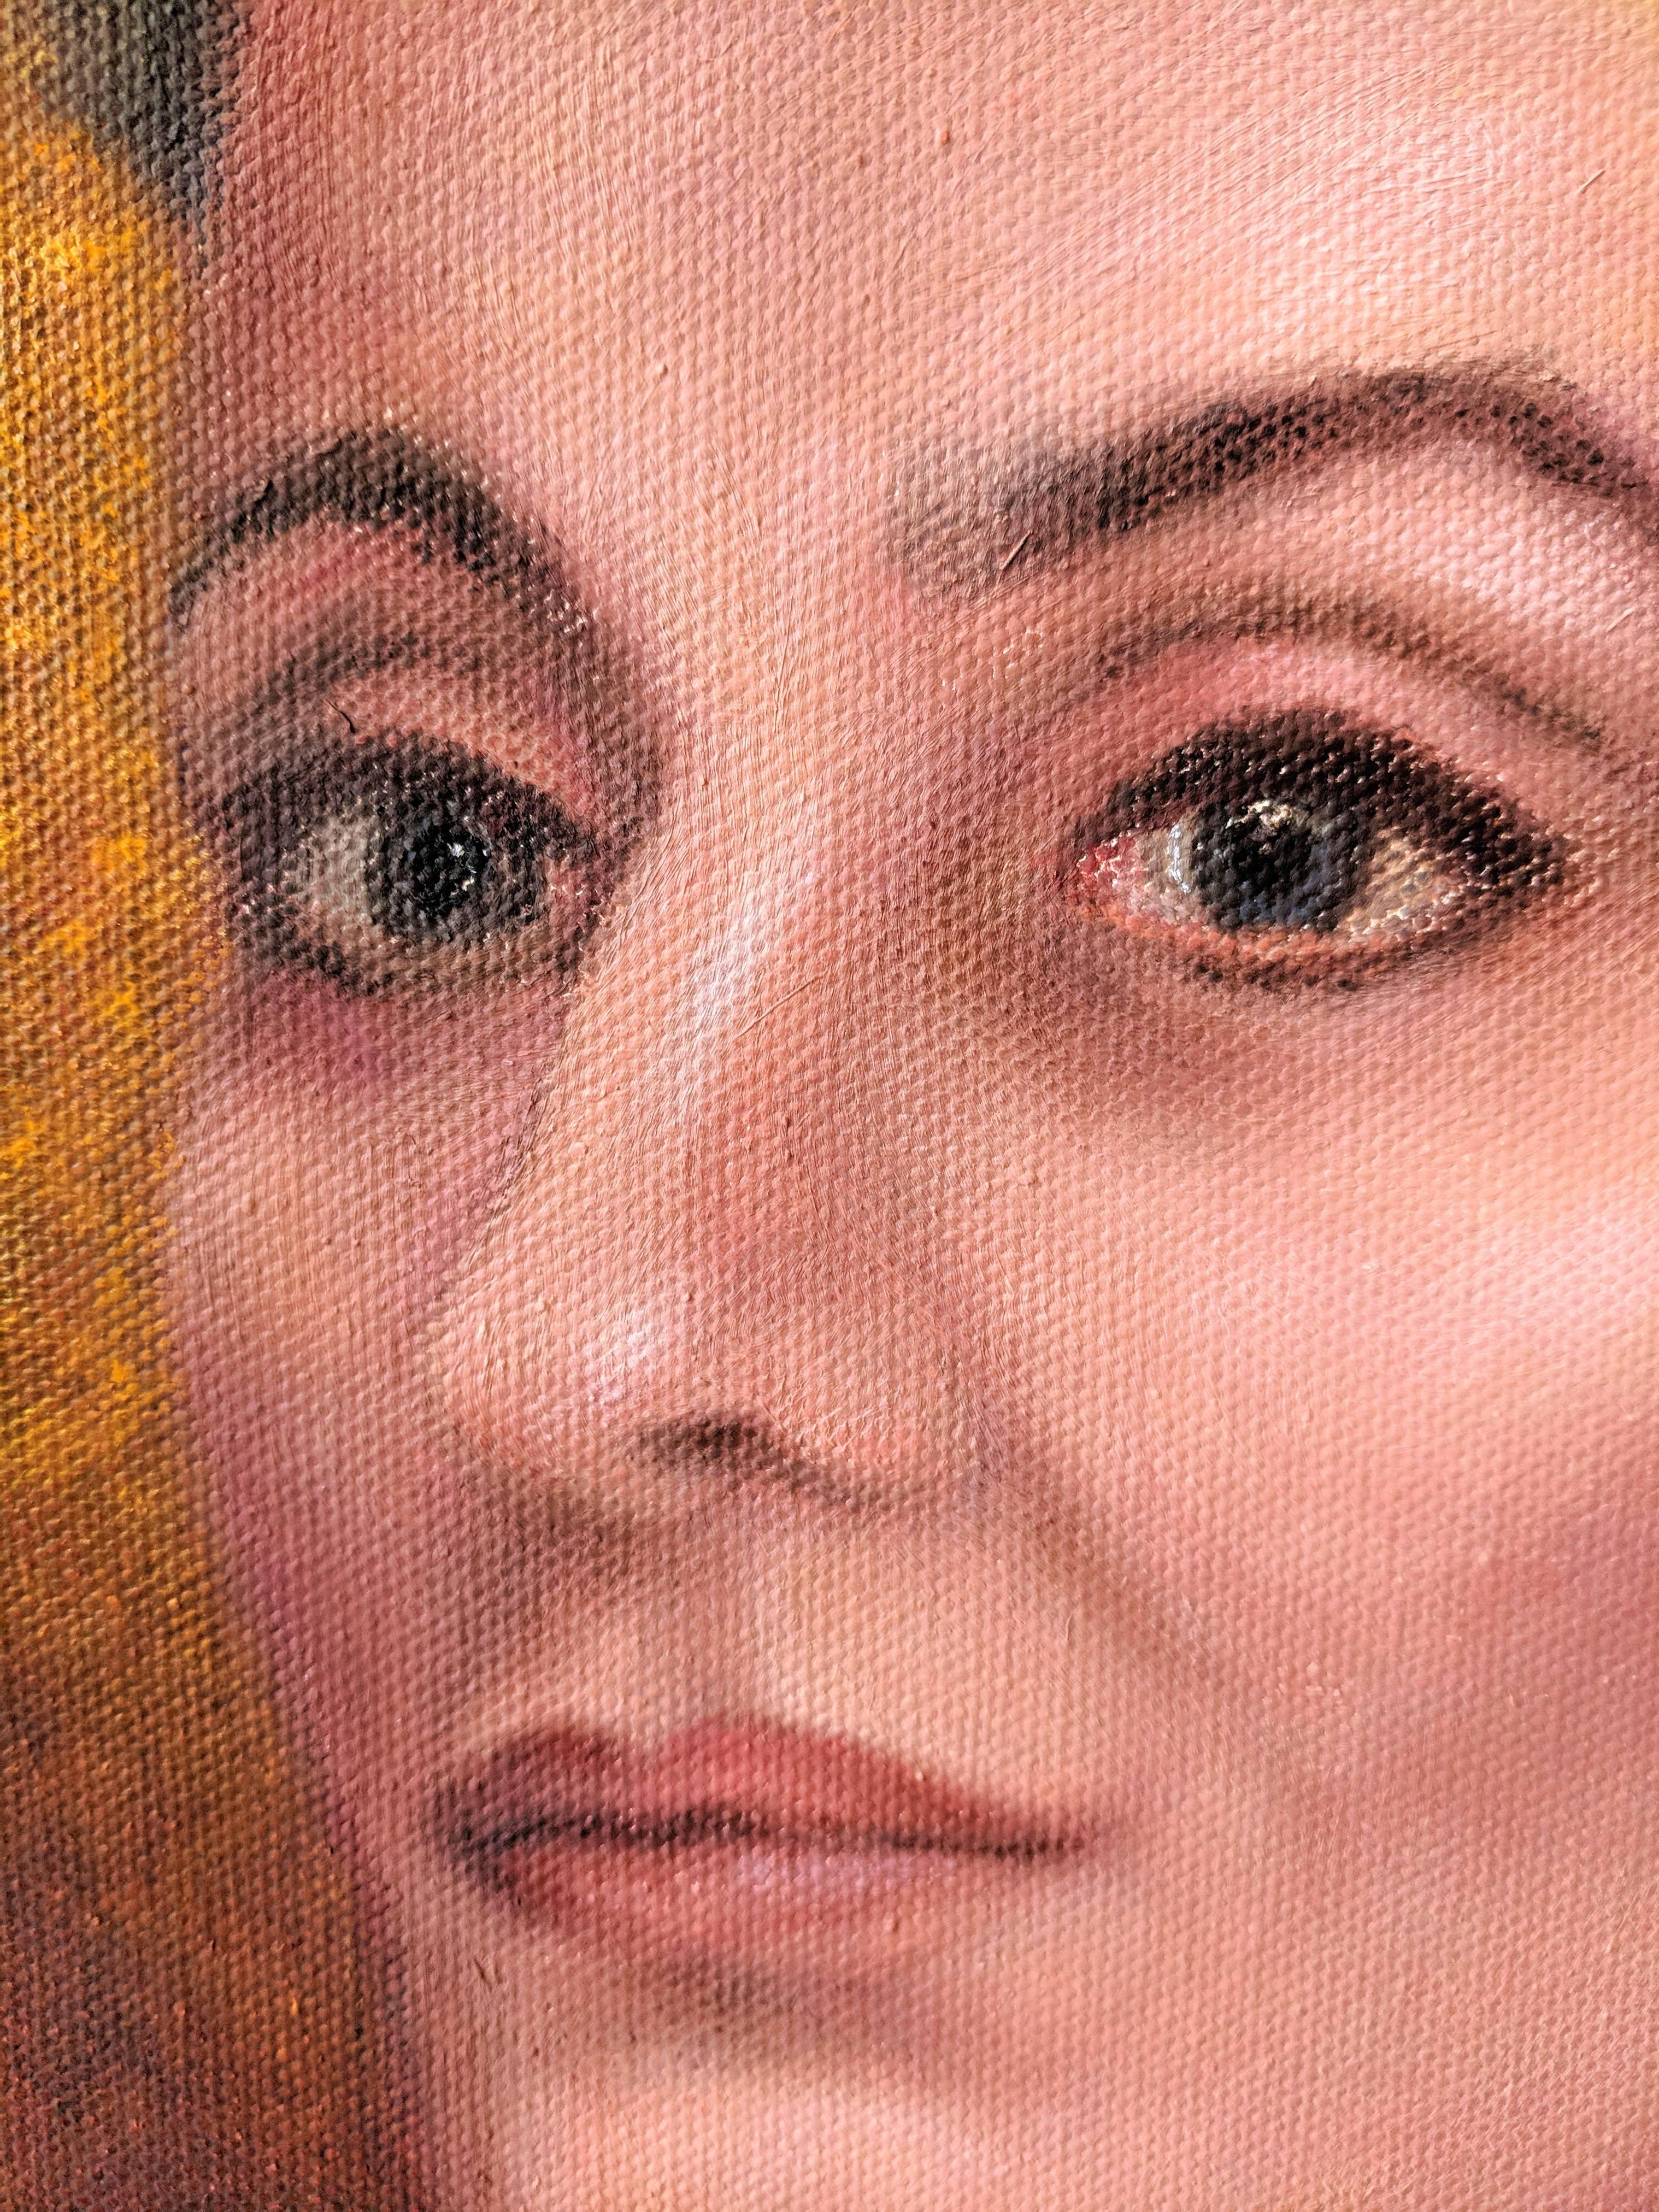 Ölgemälde auf Leinwand Porträt  -- In Barcelona (Zeitgenössisch), Painting, von Gary Masline